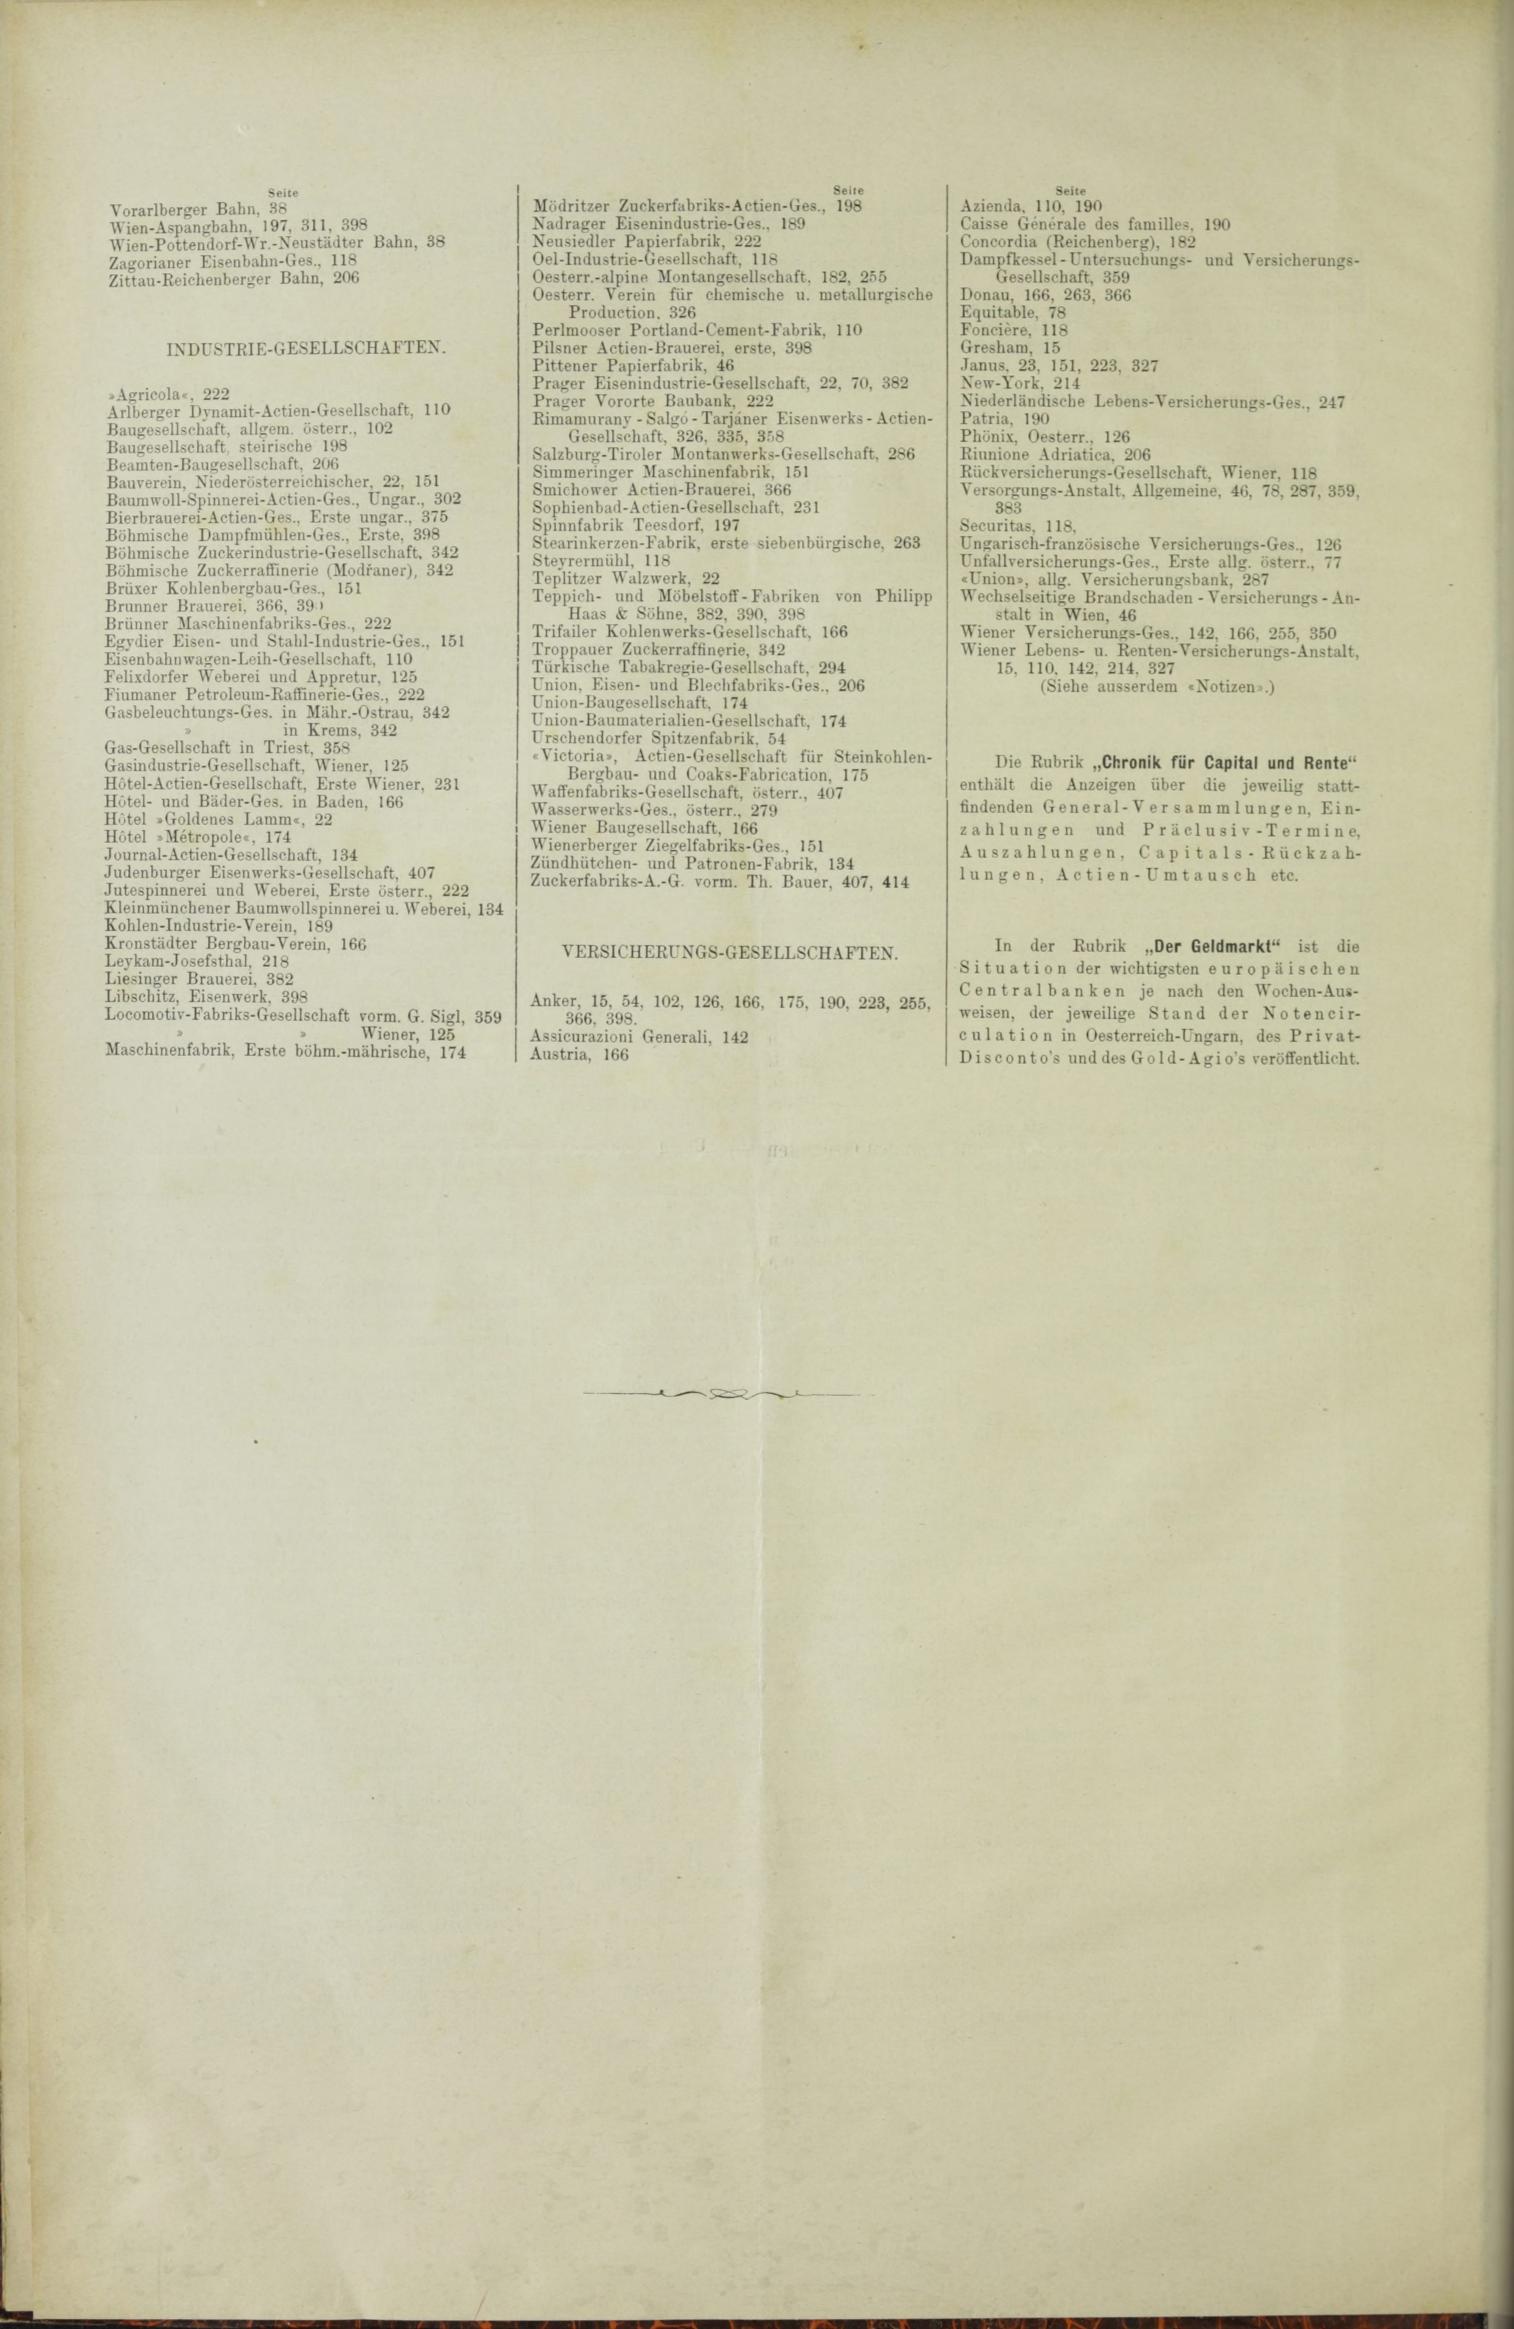 Der Tresor 19.08.1886 - Seite 12